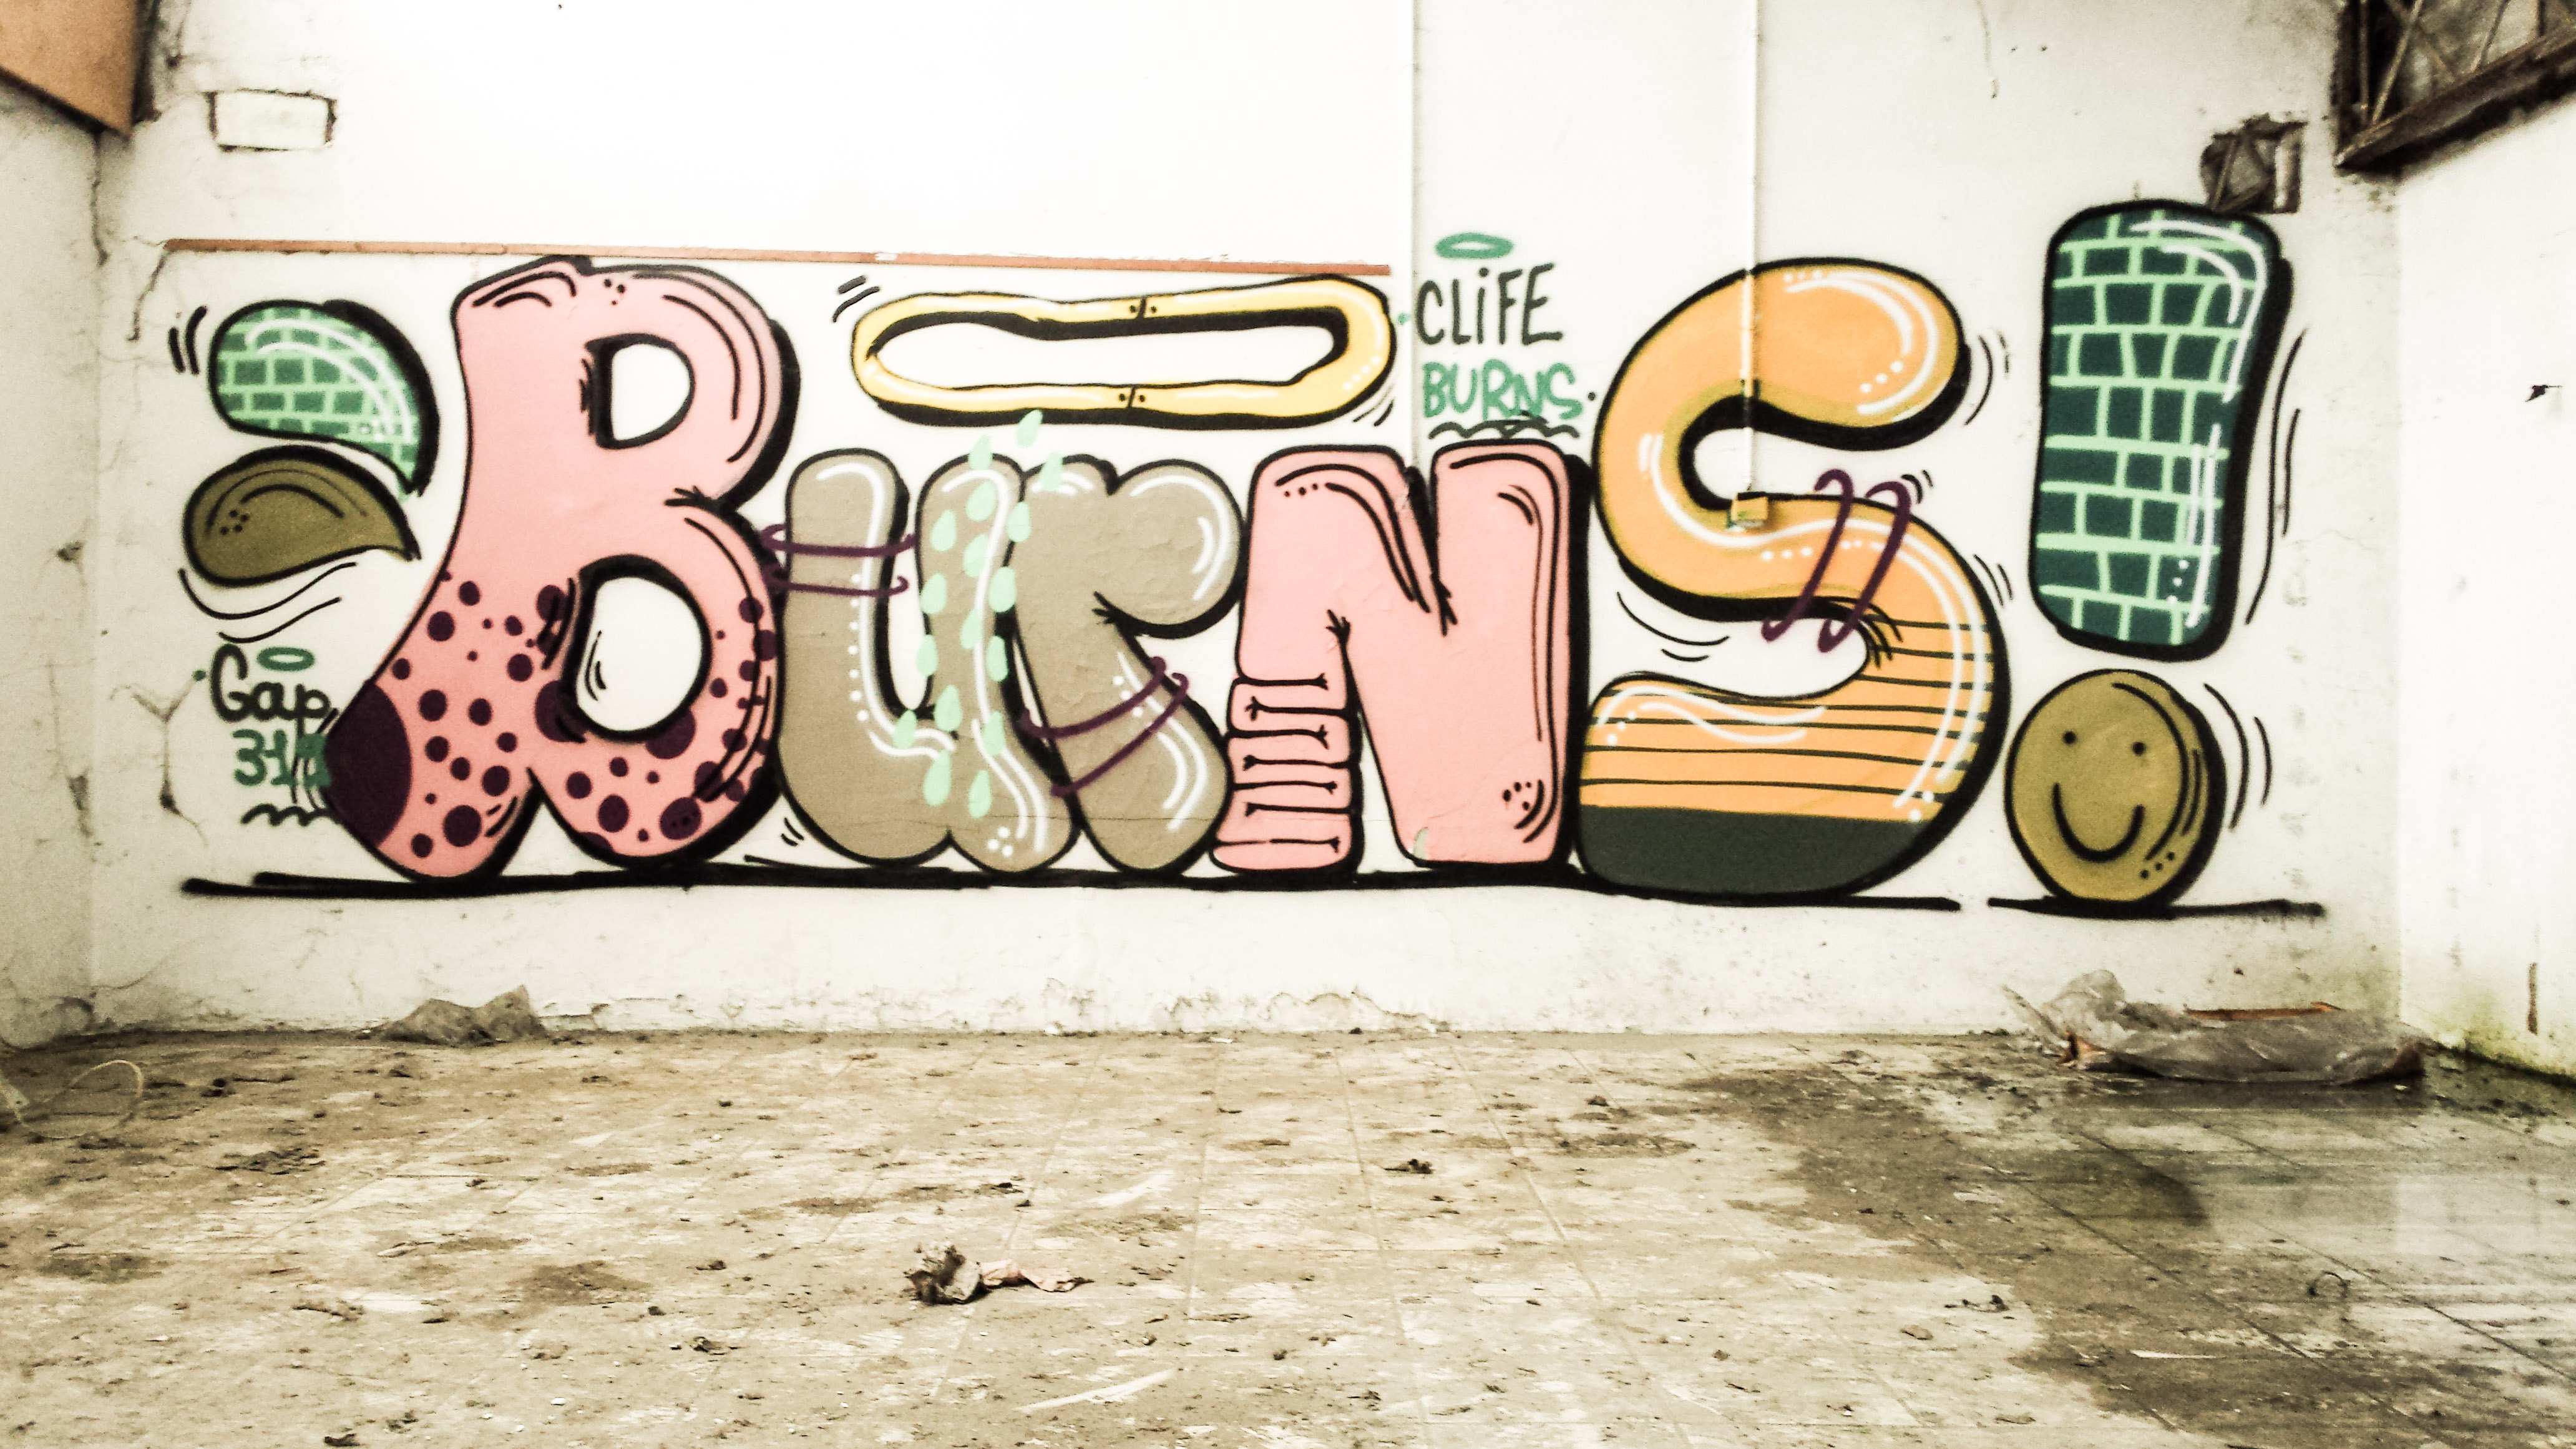 Graffiti artiste Clife Burns